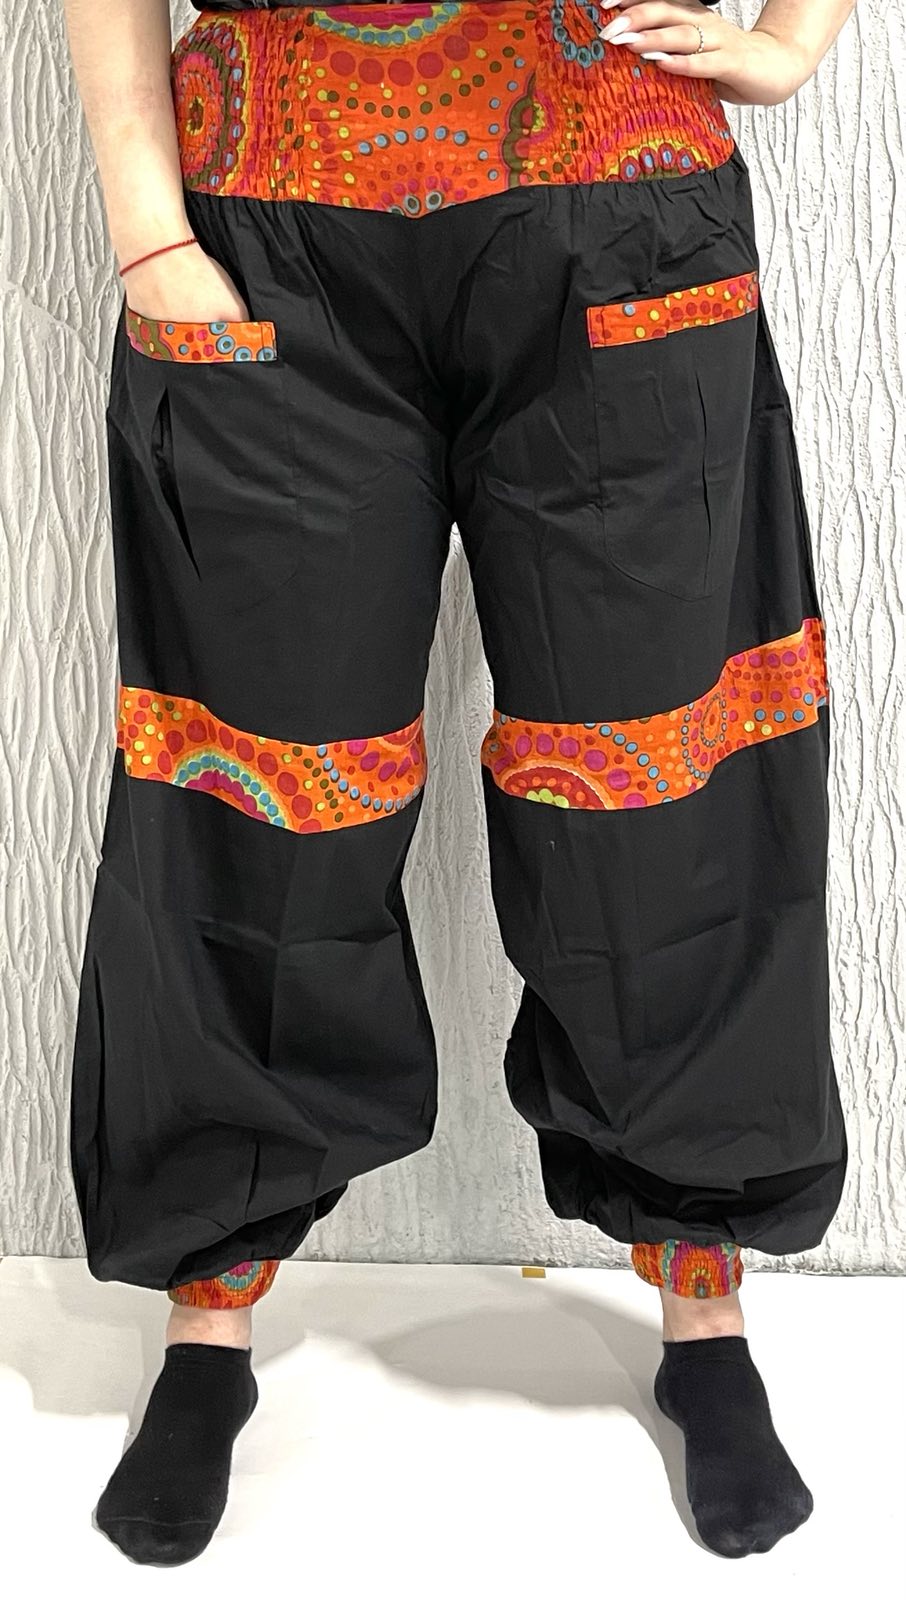 Женские индийские хлопковые брюки ЧЕРНЫЕ С РАЗНОЦВЕТНЫМИ ВСТАВКАМИ на резинке (разные цвета вставок, размер free size, 100% хлопок (батист)), 1 шт.